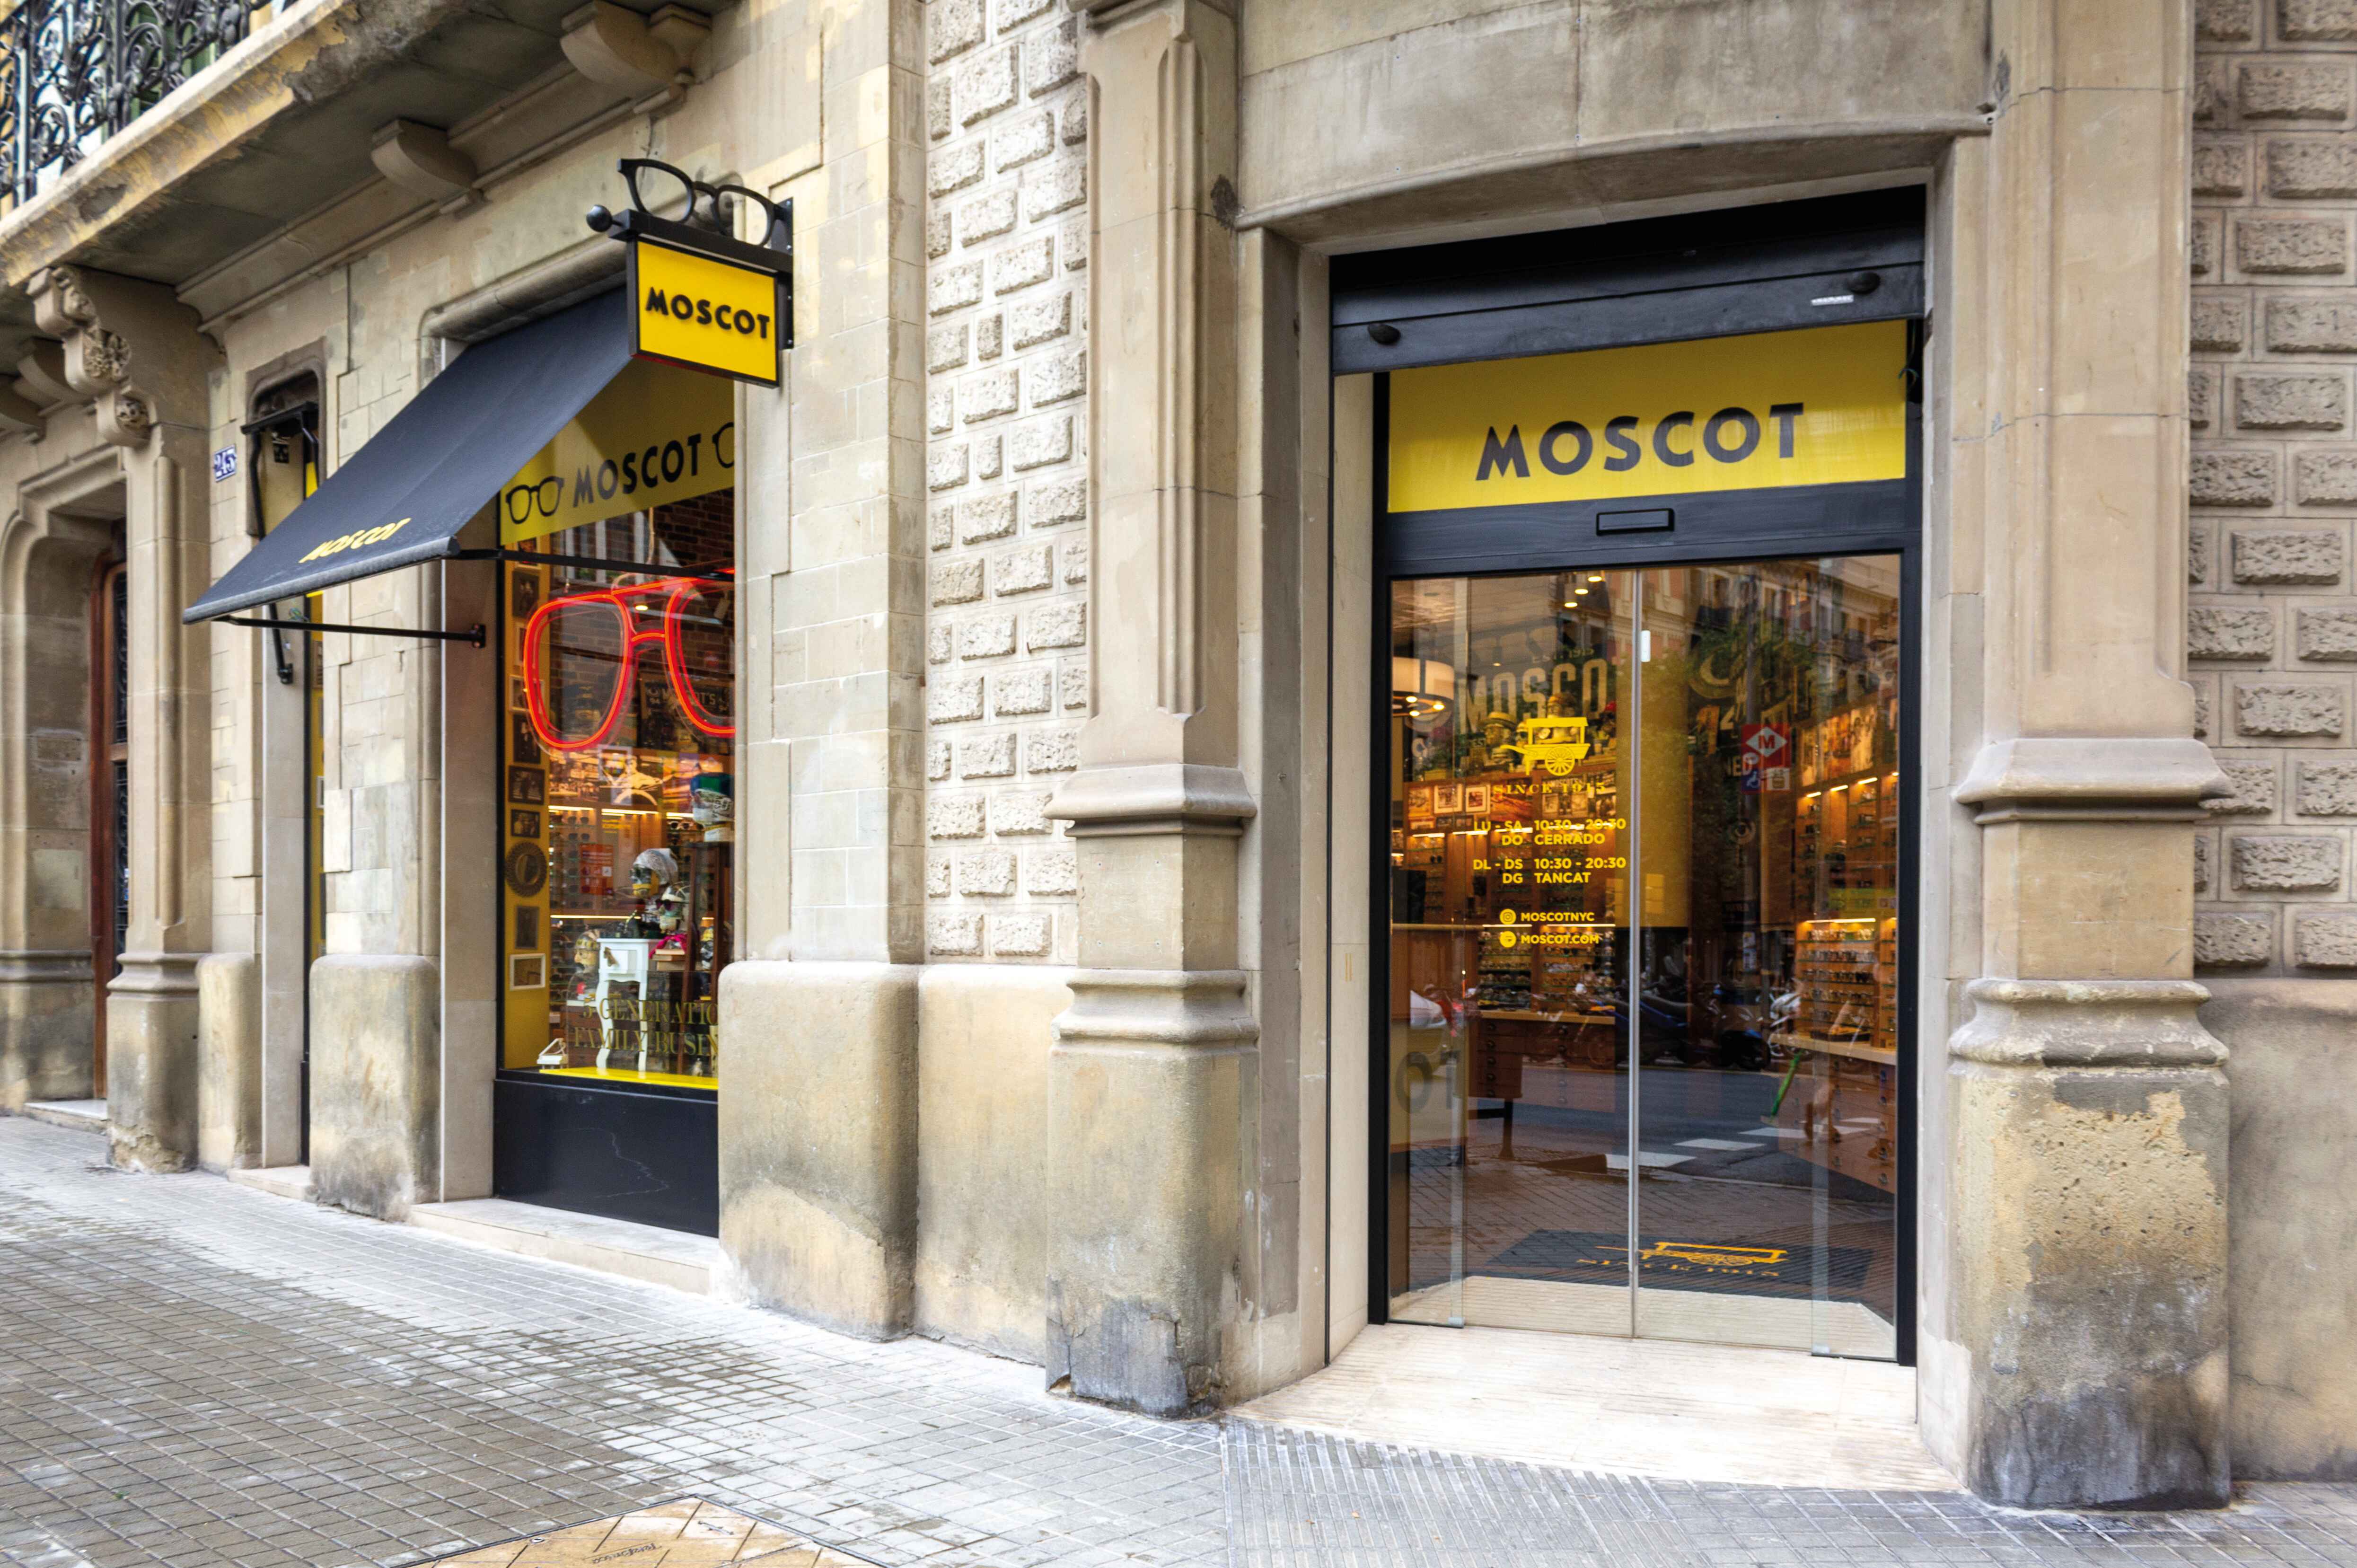 The MOSCOT Barcelona Shop exterior